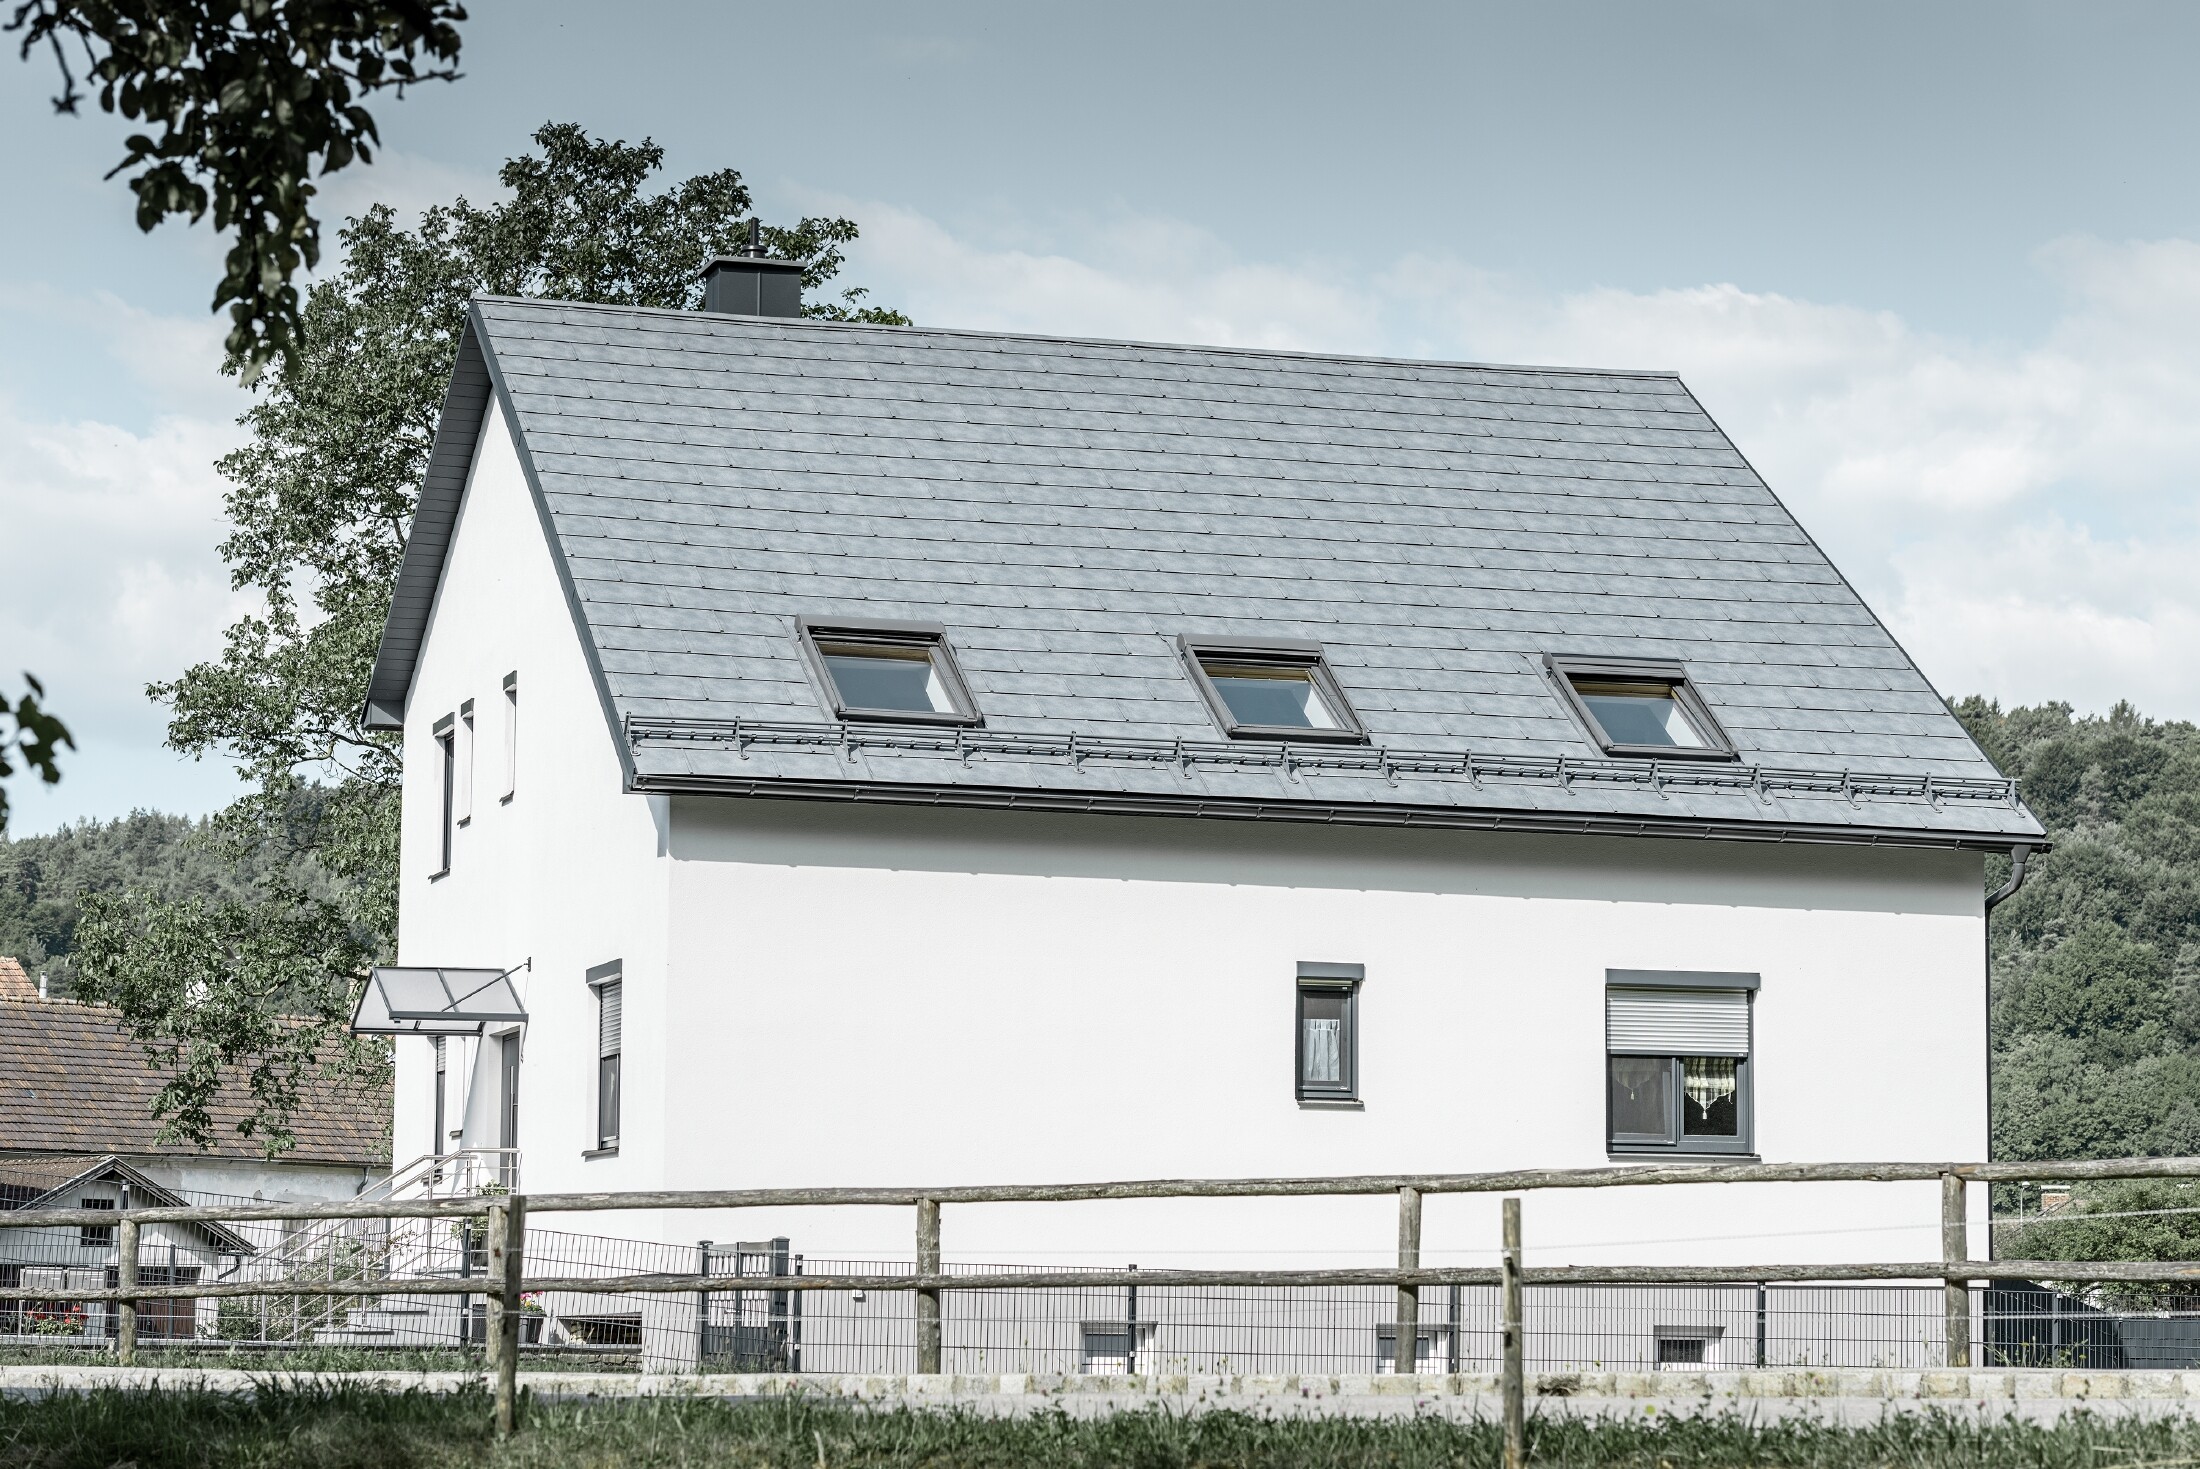 Das Satteldach des klassischen Einfamilienhauses wurde mit der neuen PREFA Dachplatte R.16 in Steingrau eingedeckt. In der Dachfläche wurden drei Dachfenster eingefügt und Schneerechen montiert. Die Fassade ist einfach in Weiß gehalten.